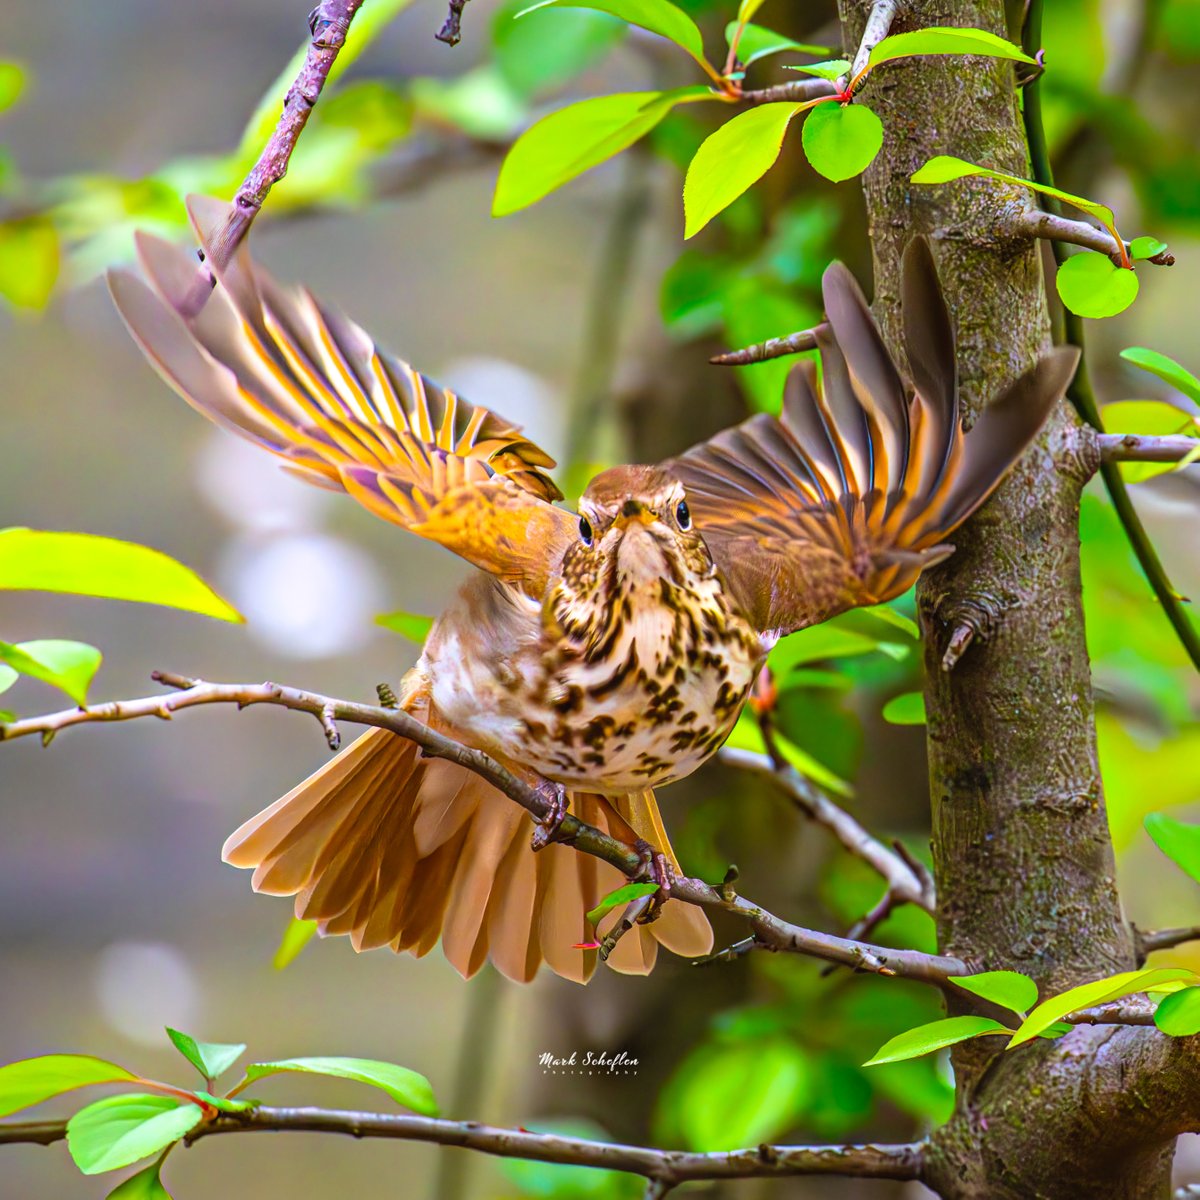 Hermit Thrush,  North Woods, Central Park, NYC  #birdcpp #TwitterNatureCommunity #birdsofinstagram #britishnatureguide #naturephotography #birdphotography #twitterphotography #wildbirdphotography #nikonphotography #NatureBeauty #nycaudubon